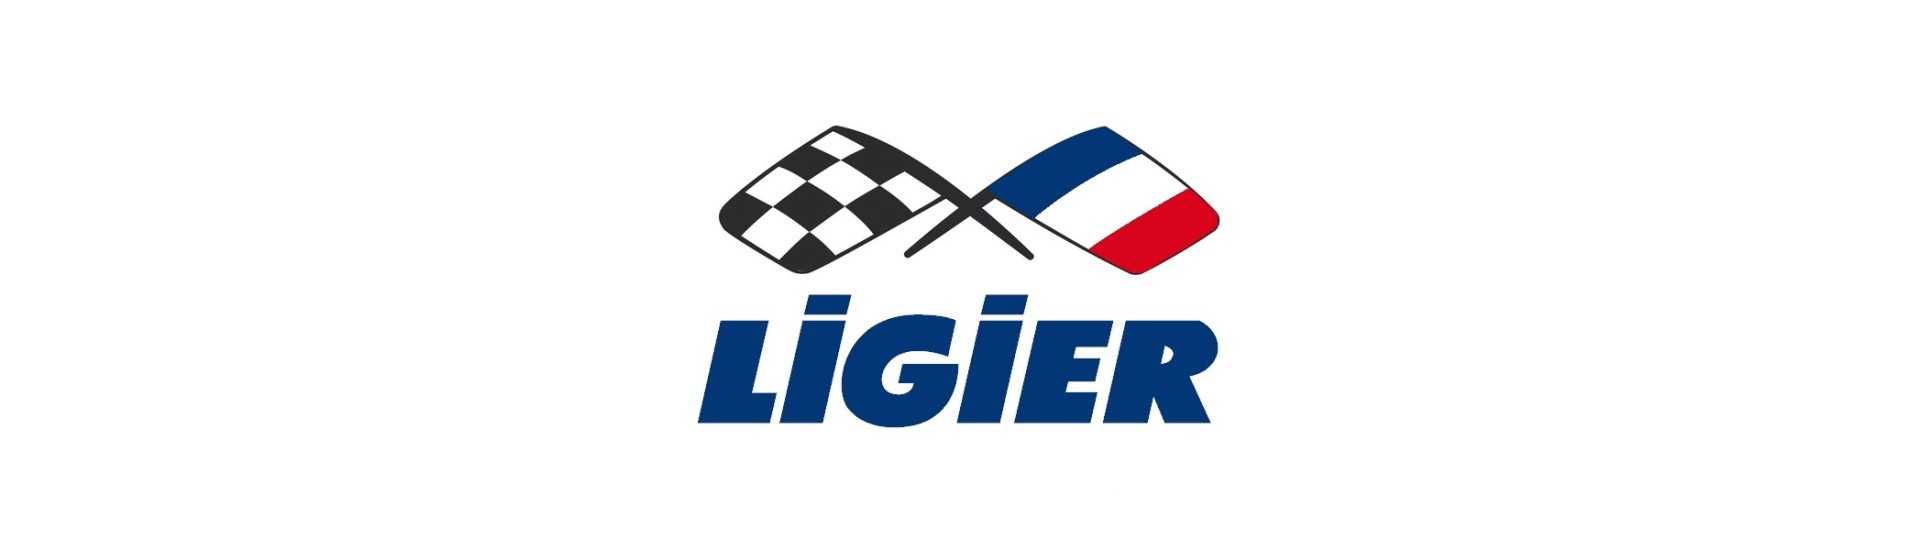 Melhor roda sobressalente para carro sem licença Ligier